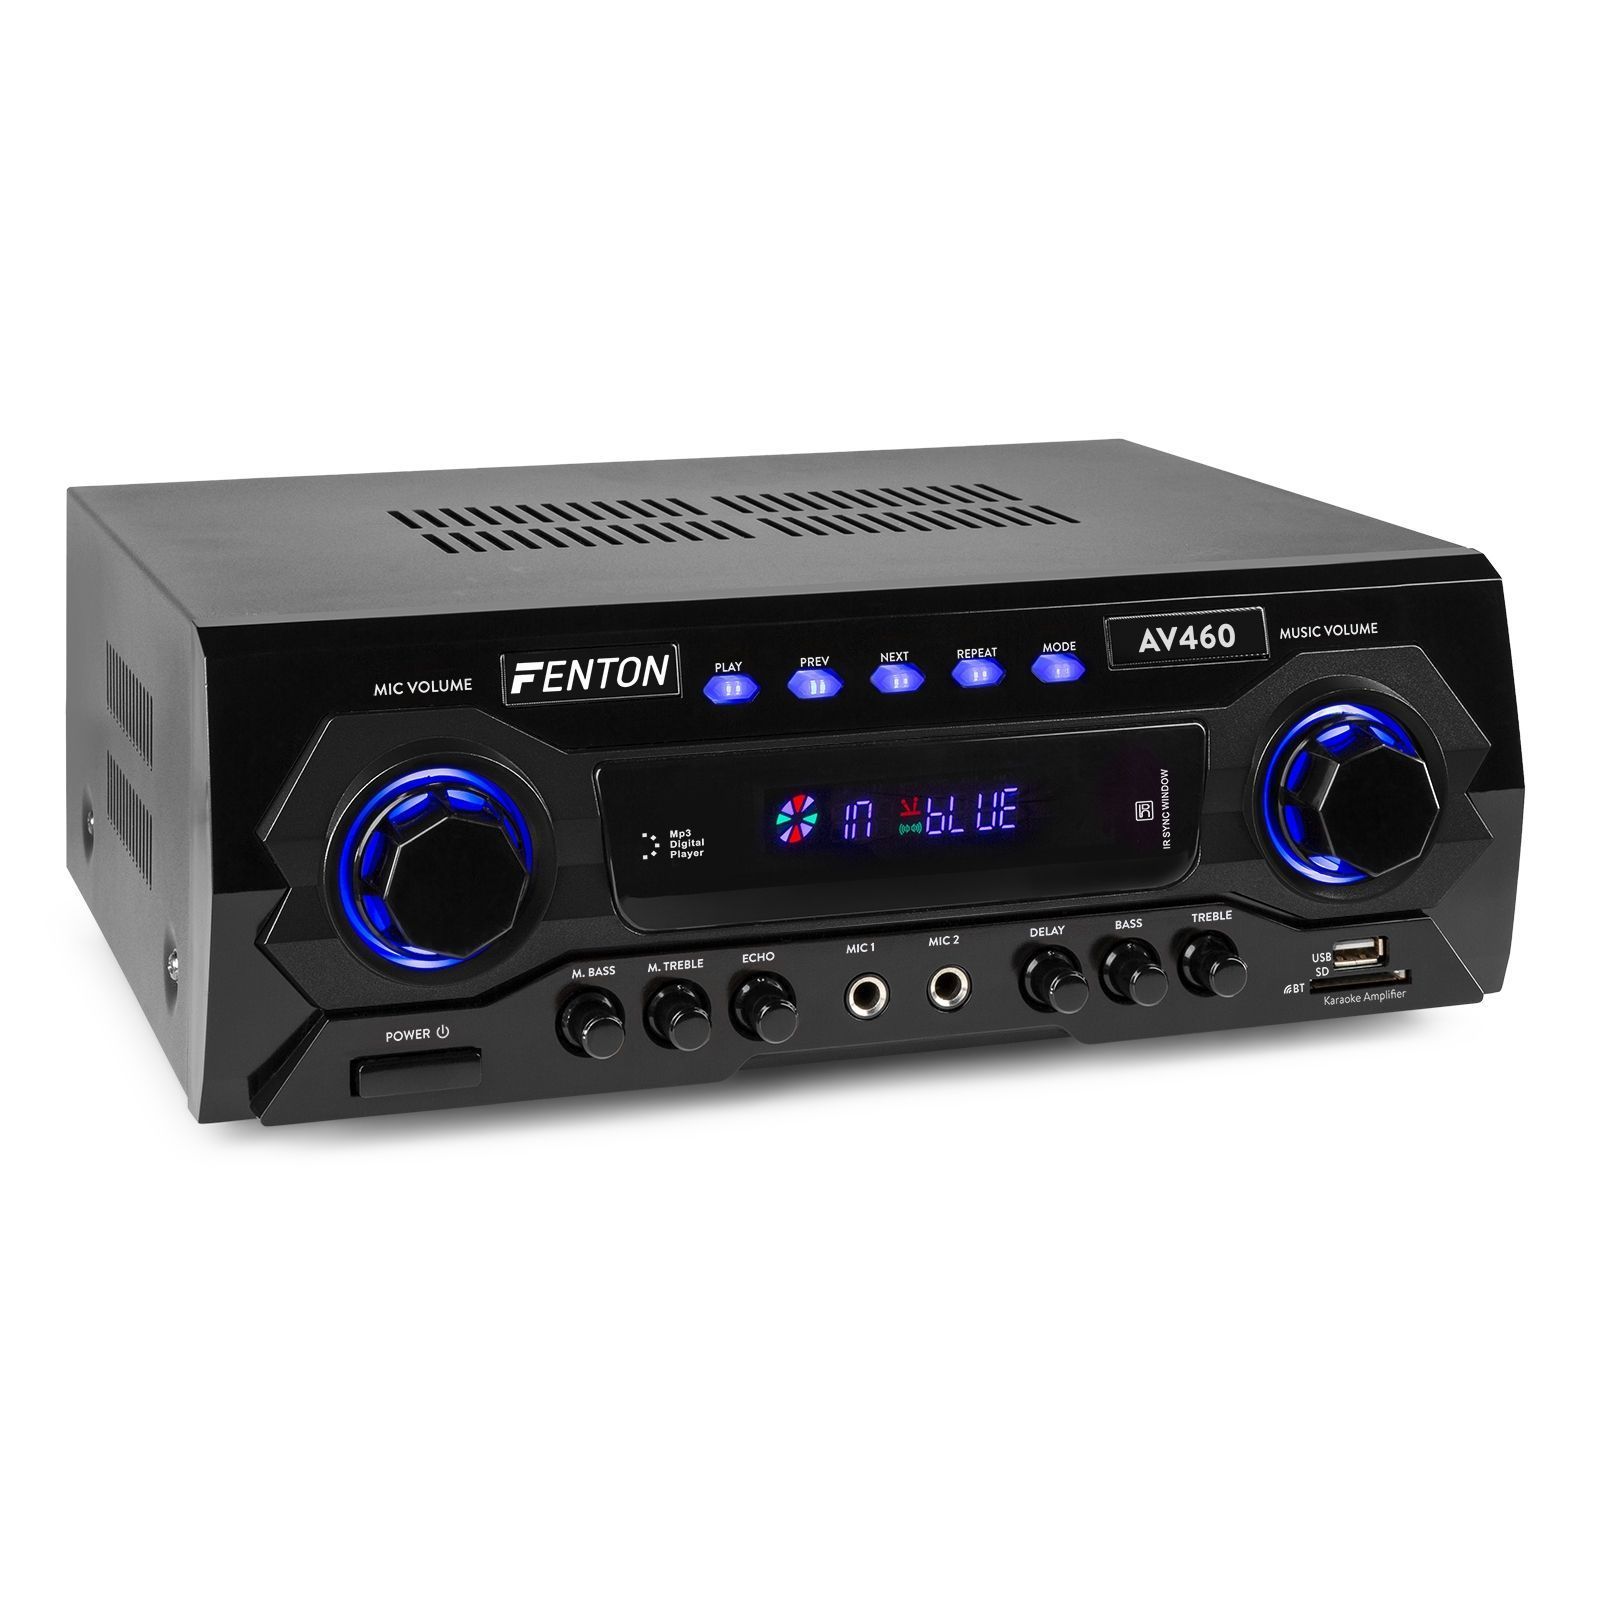 Fenton AV460 karaokeförstärkare med Bluetooth, mp3-spelare, eko och equalizer